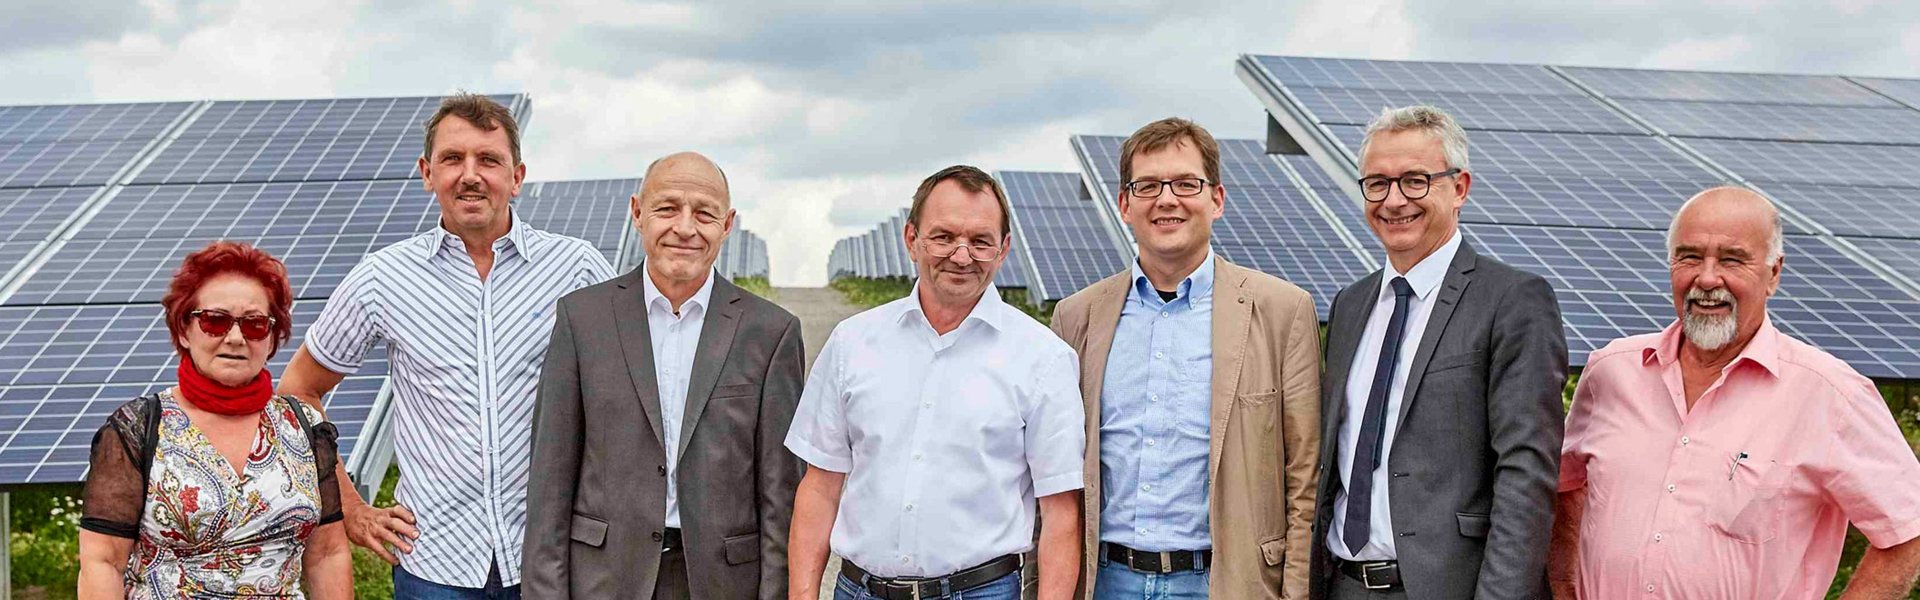 Solarpark in Malsch Gruppenbild: Landrat besichtigt Malscher Solaranlage